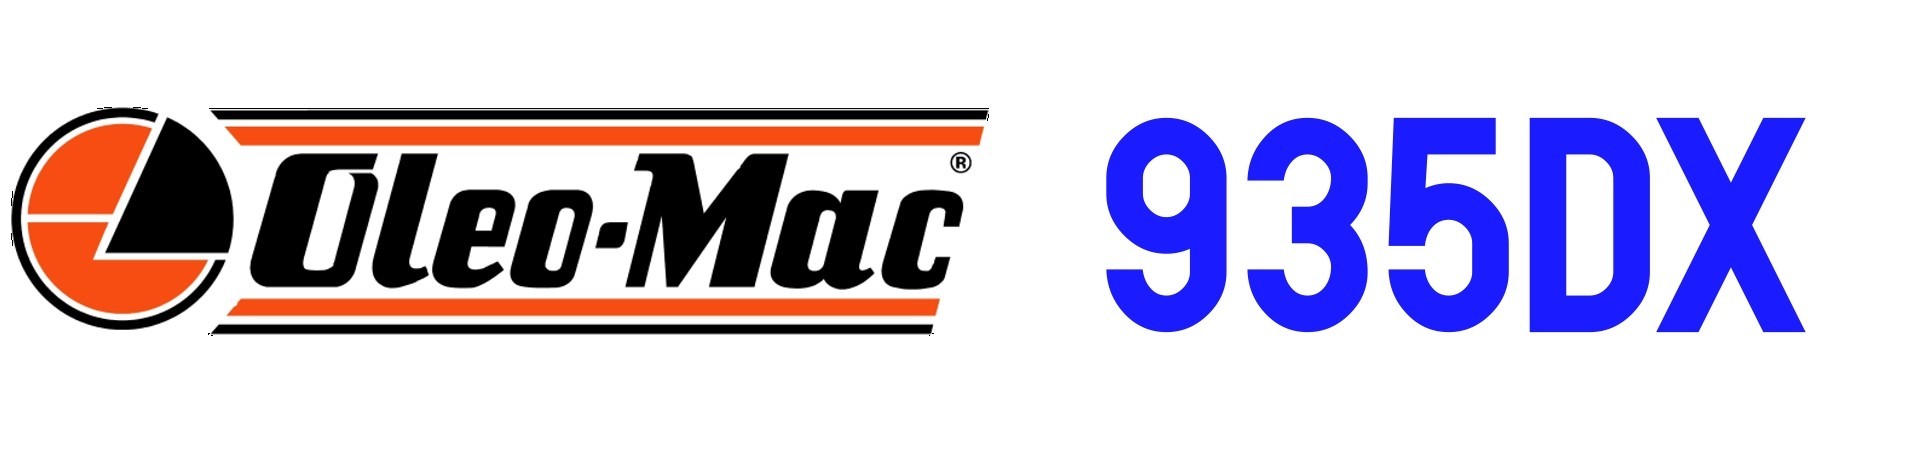 RECAMBIOS Motosierra Oleo Mac 935DX al Mejor PRECIO